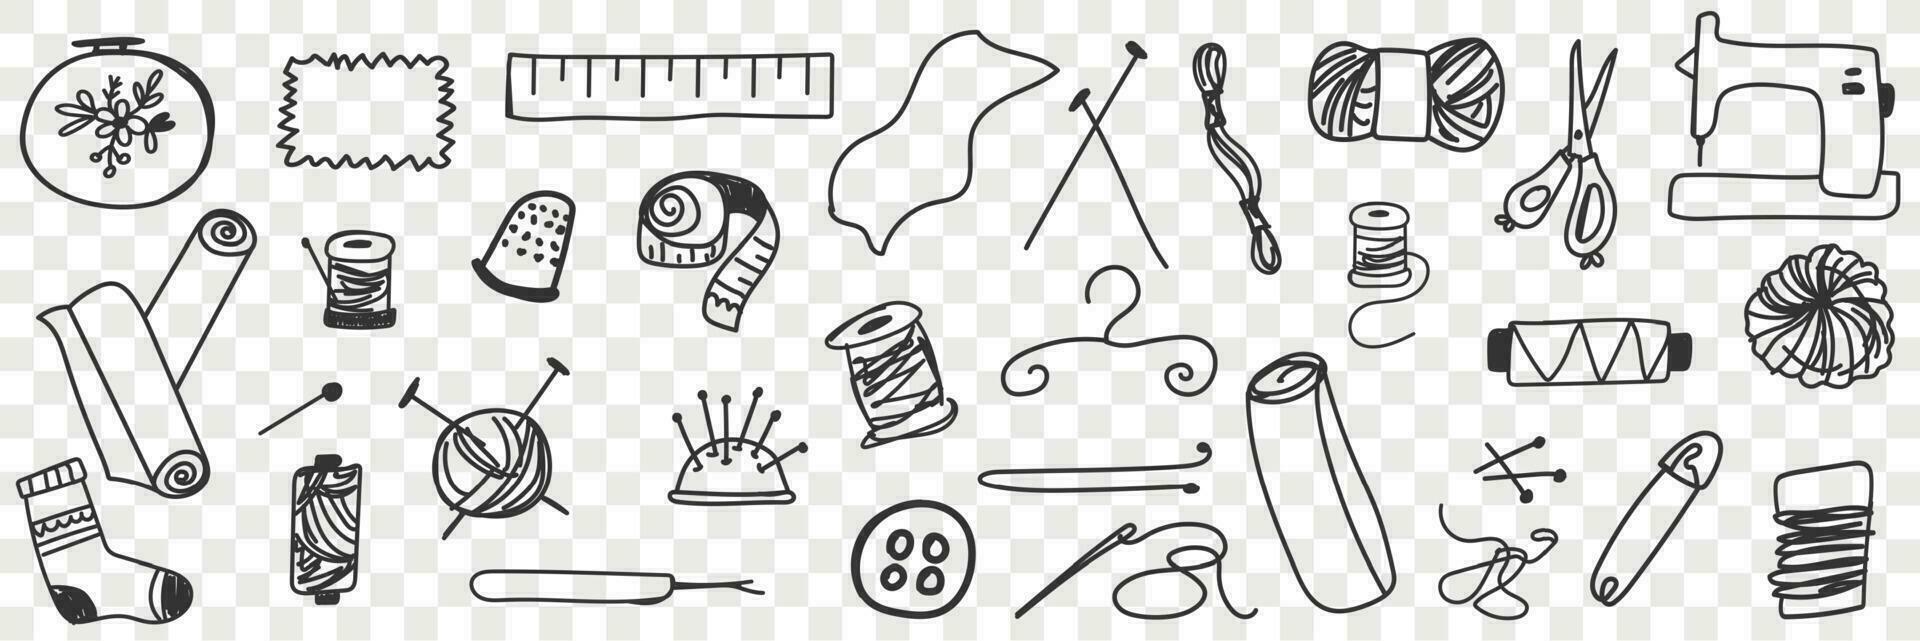 herramientas para de coser garabatear colocar. colección de mano dibujado medición cinta agujas tijeras de coser máquina herramientas para de coser y tejido de punto aislado en transparente vector